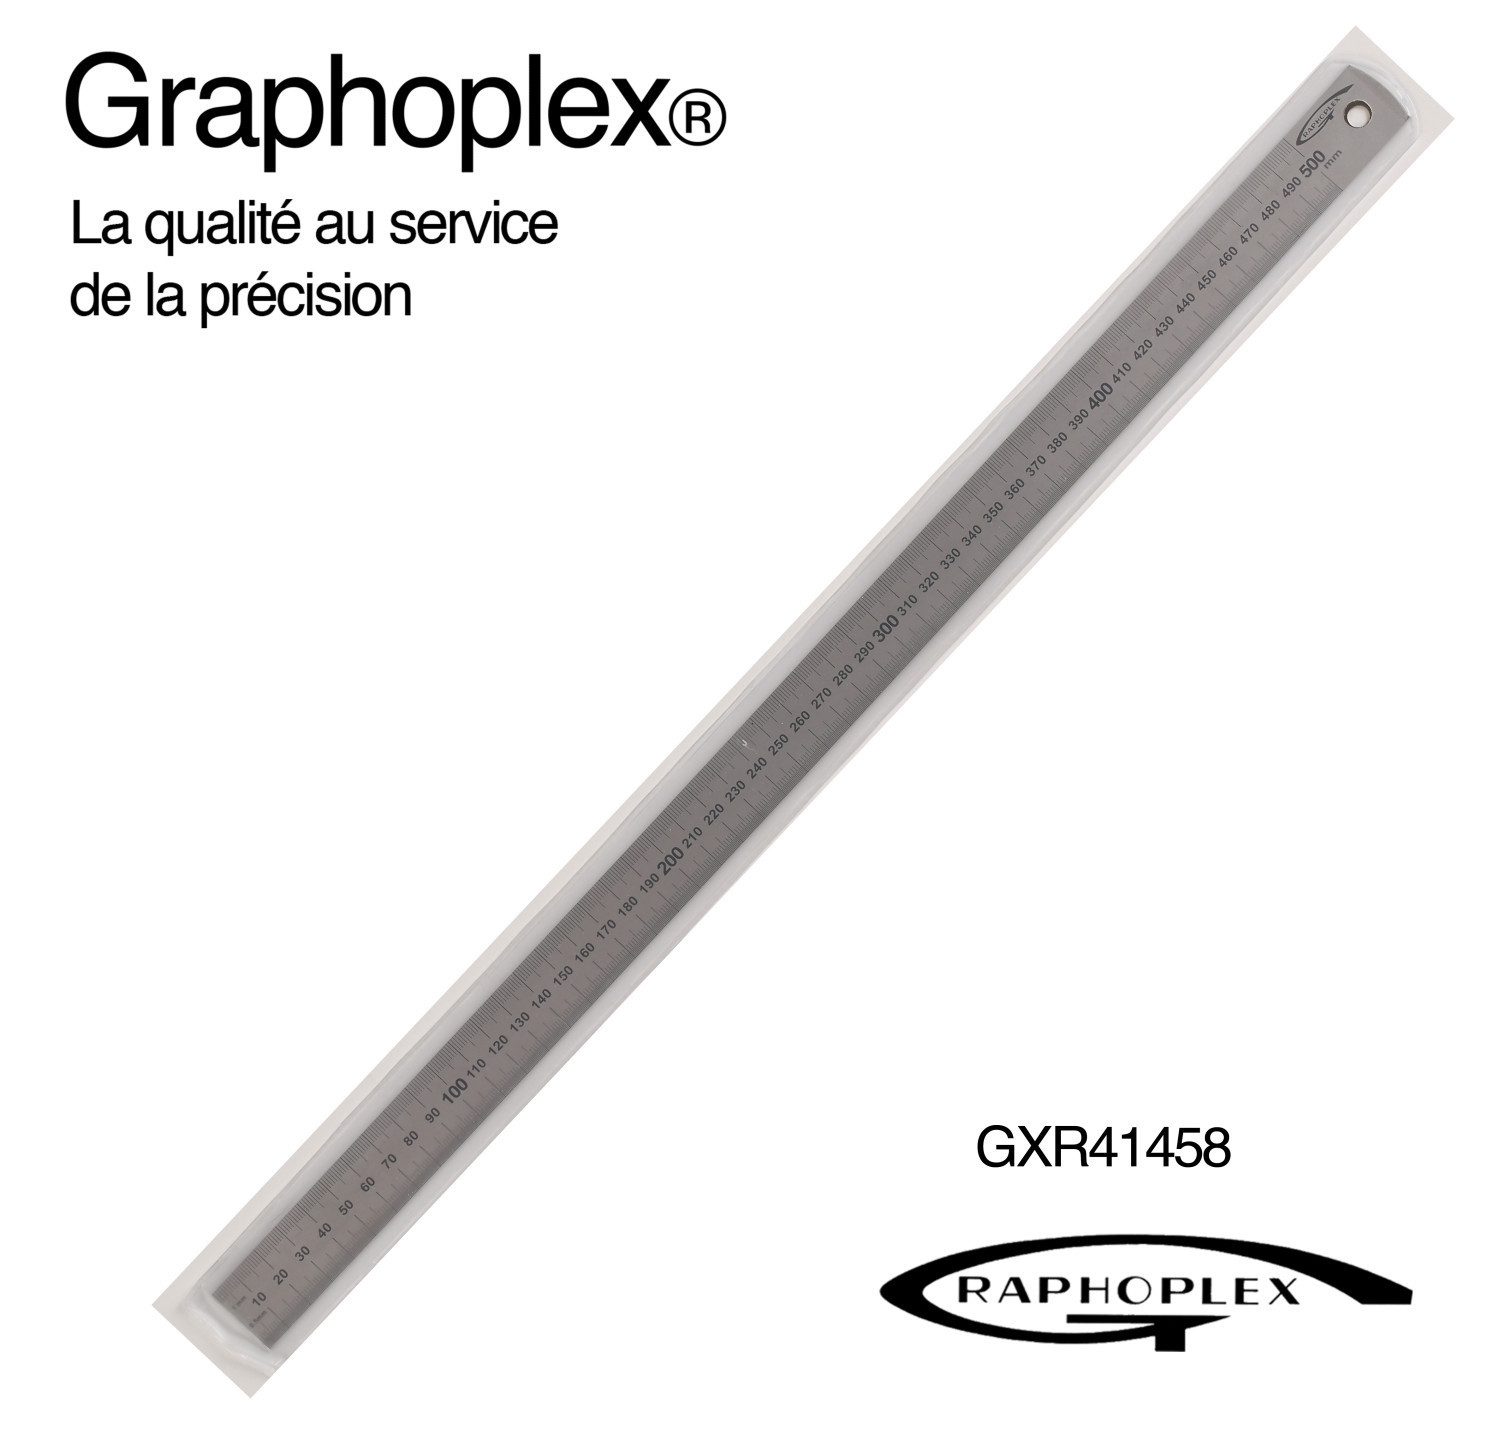 Réglet acier flexible ép 0,5mm l 13mm L 50cm - Graphoplex ref GXR41458